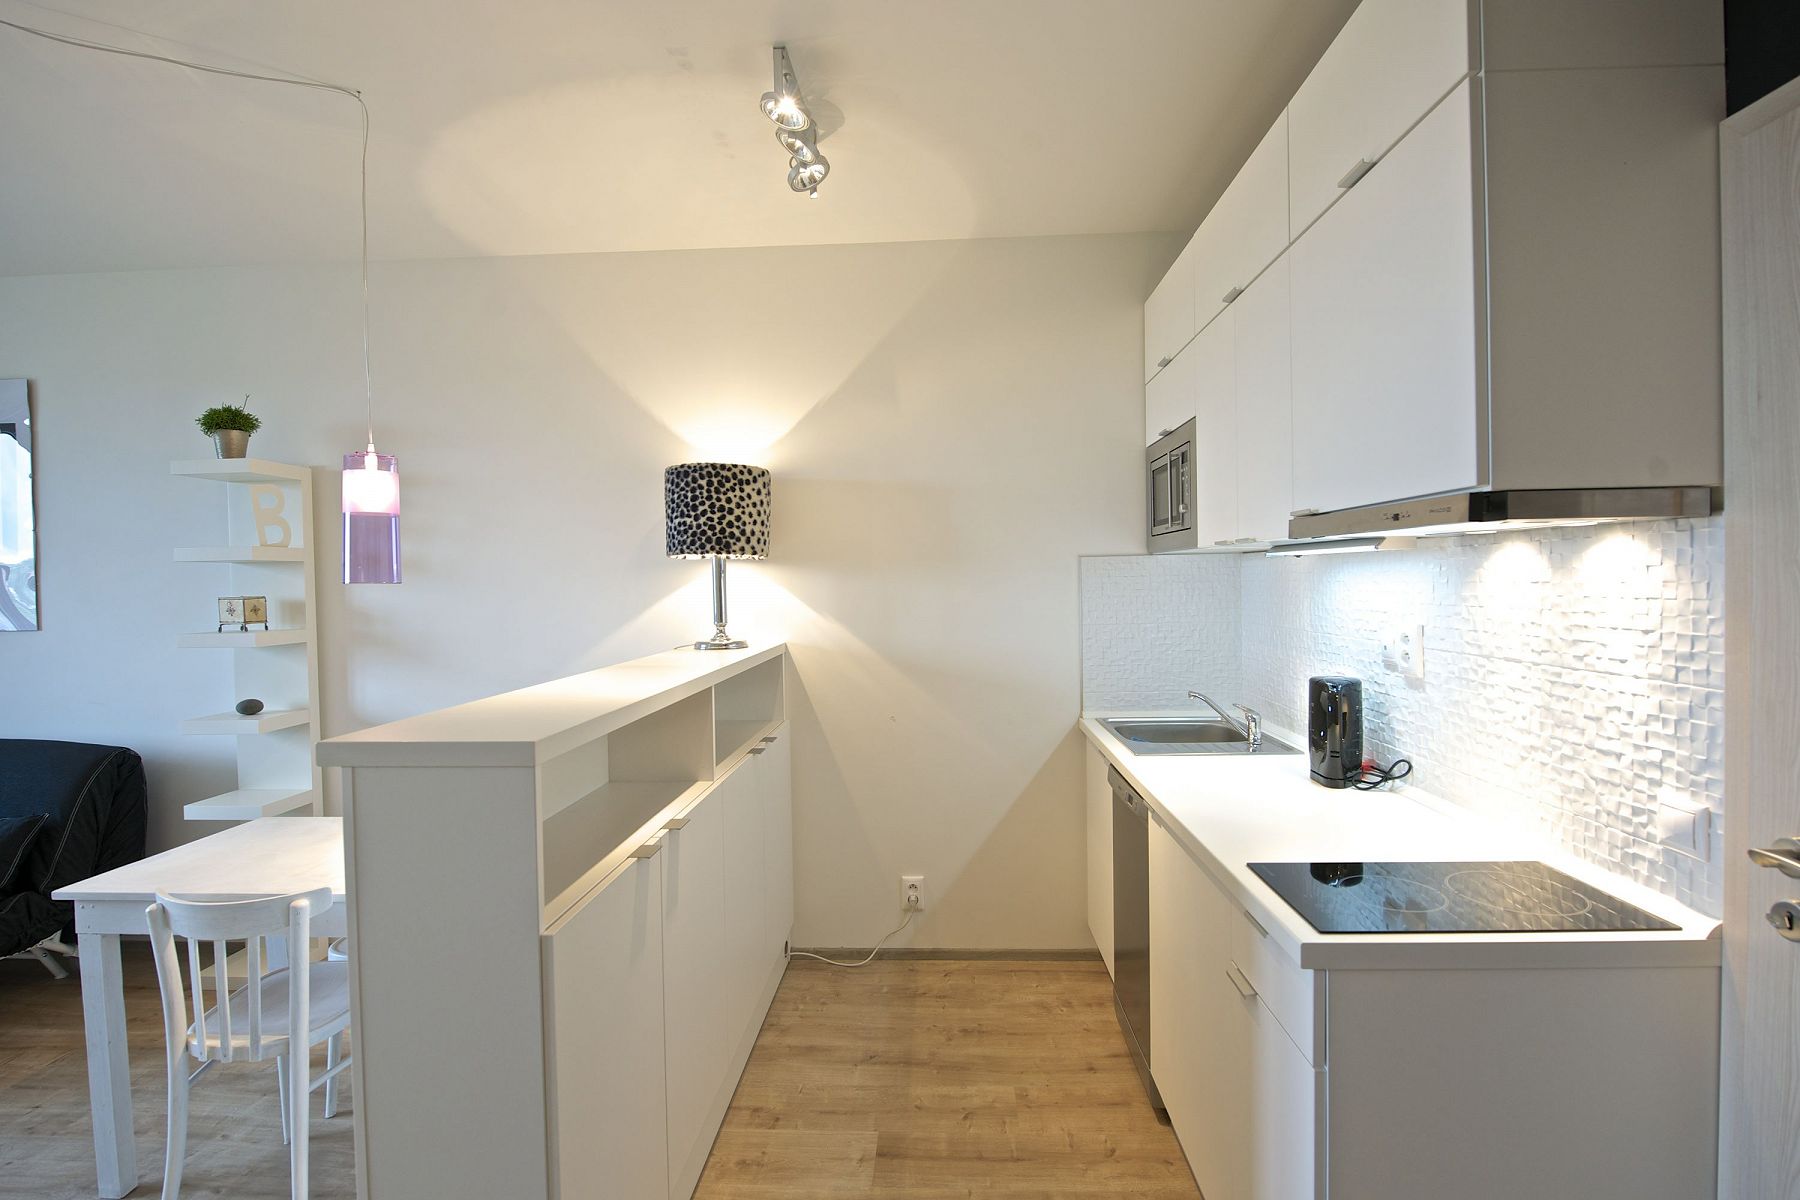 Kjøkken 9 kvm i en studioleilighet